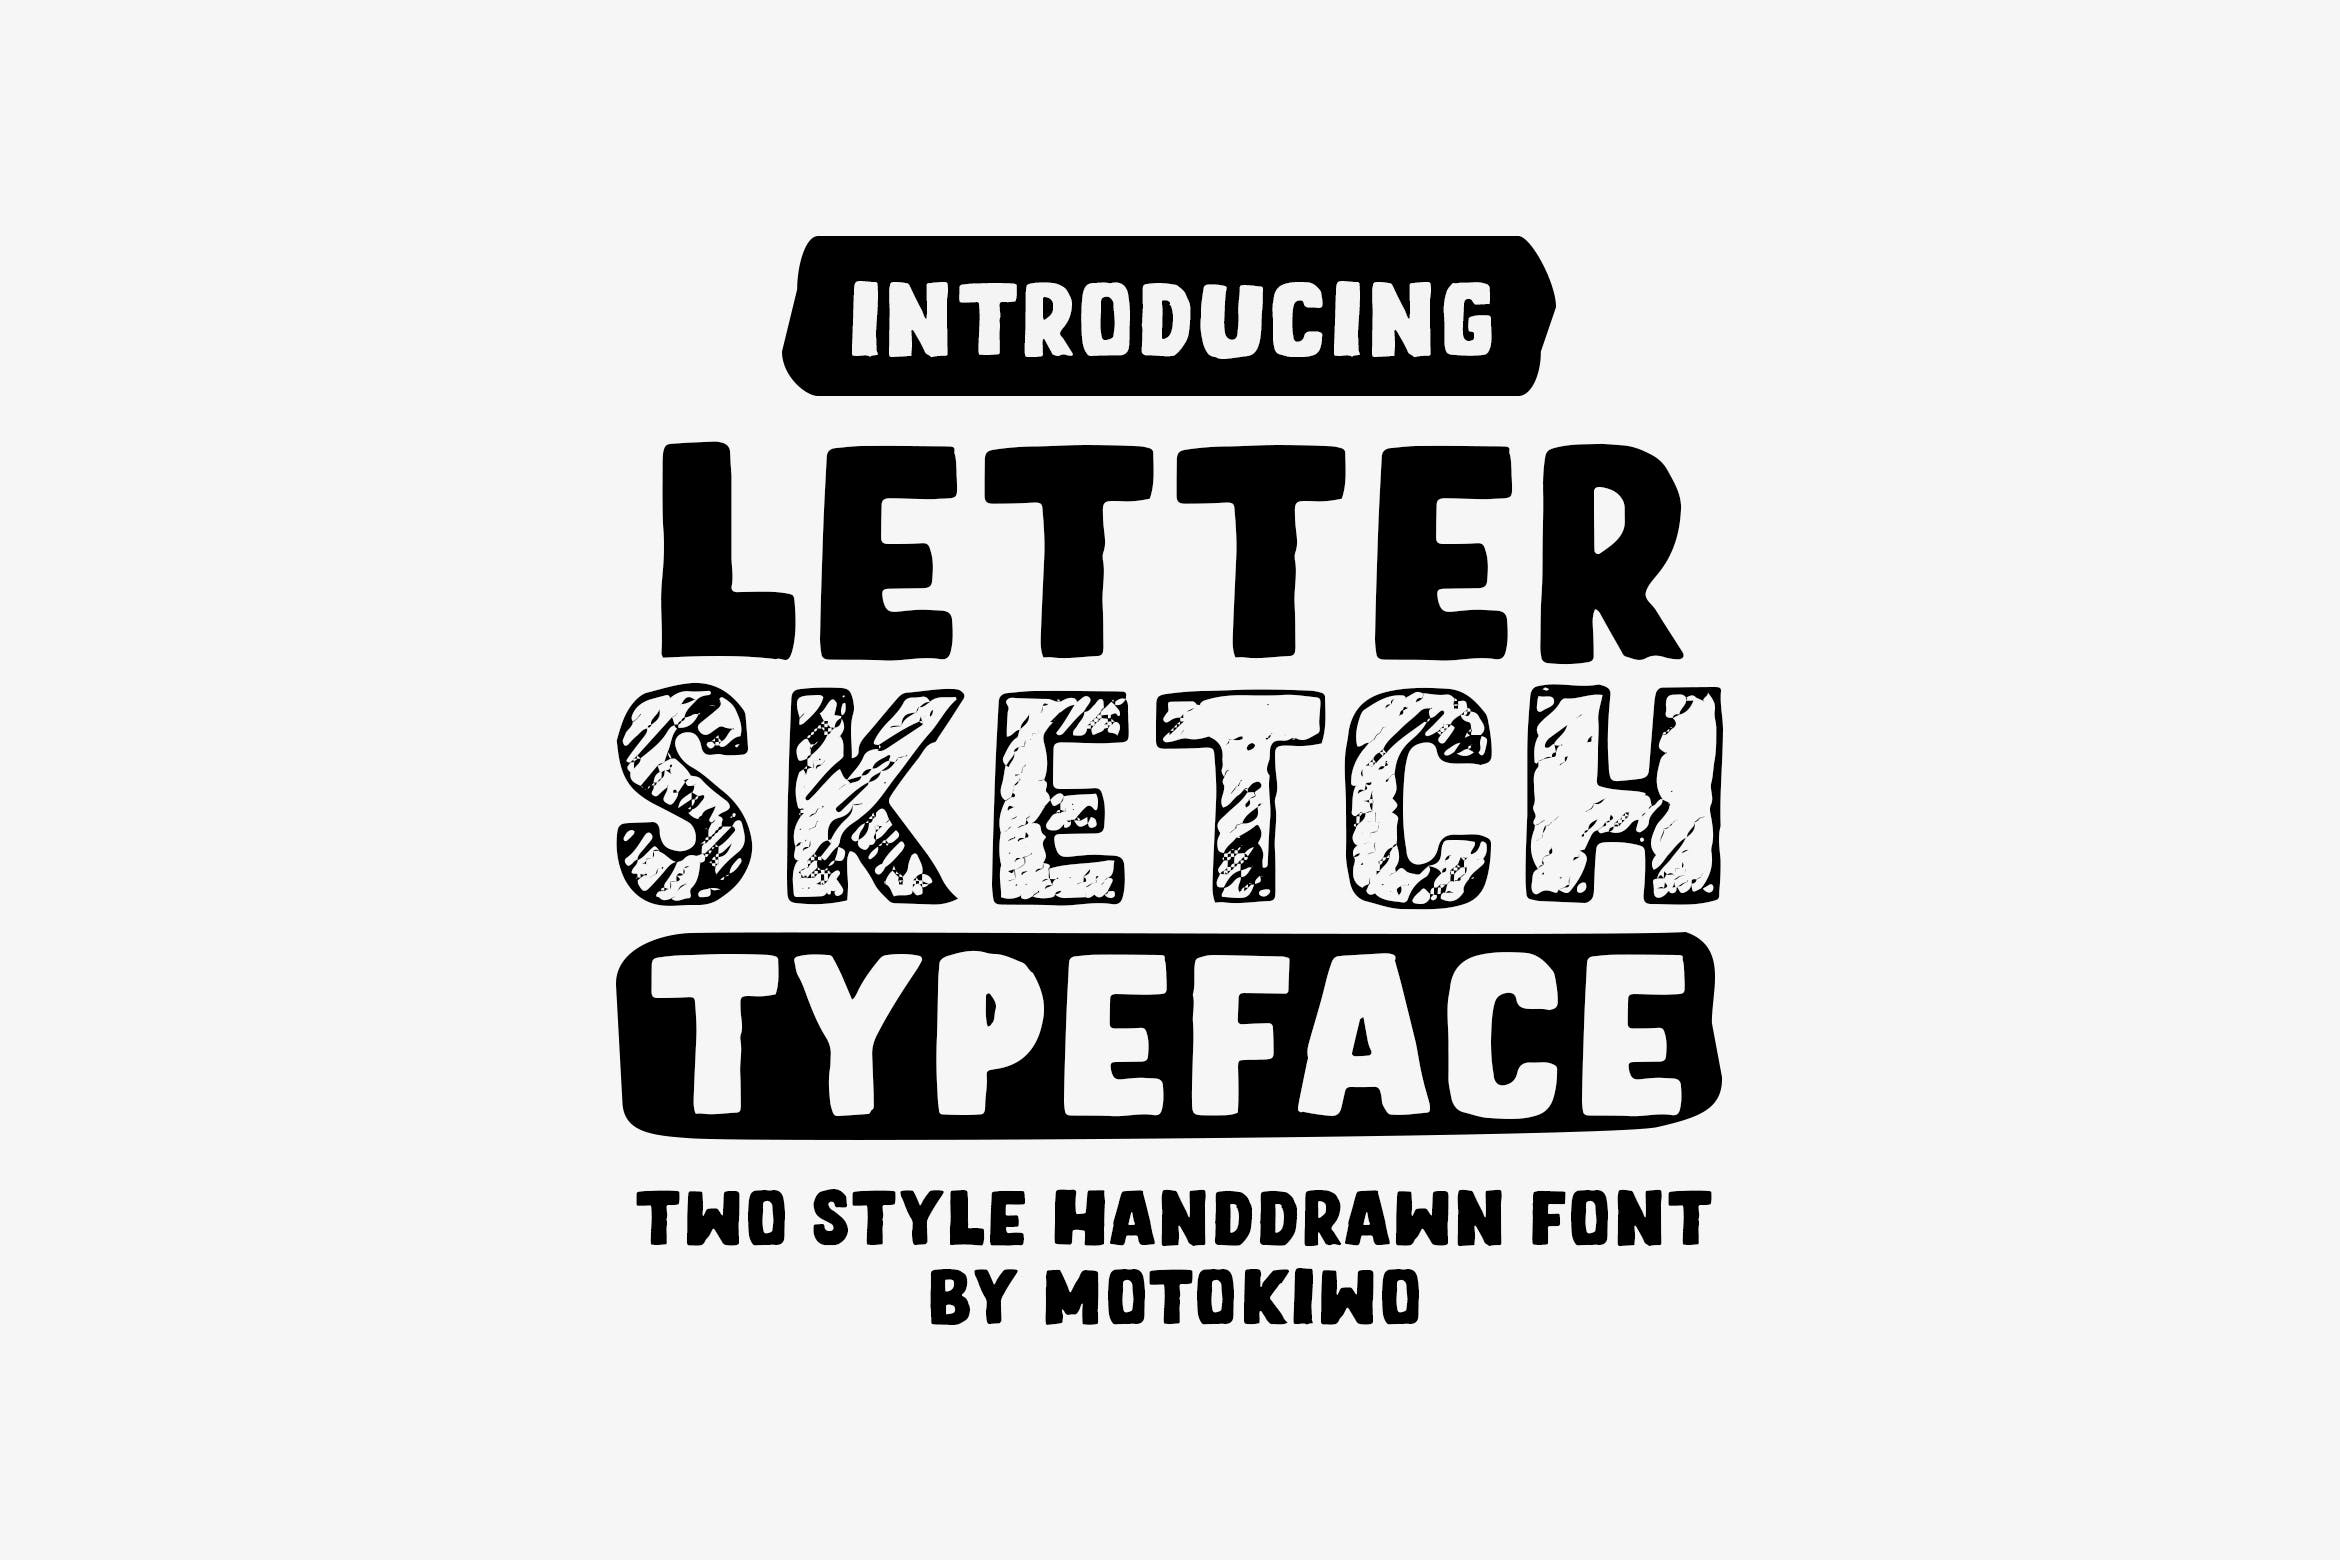 铅笔素描风格＆实心填充英文无衬线字体大洋岛精选 Letter Sketch Typeface插图